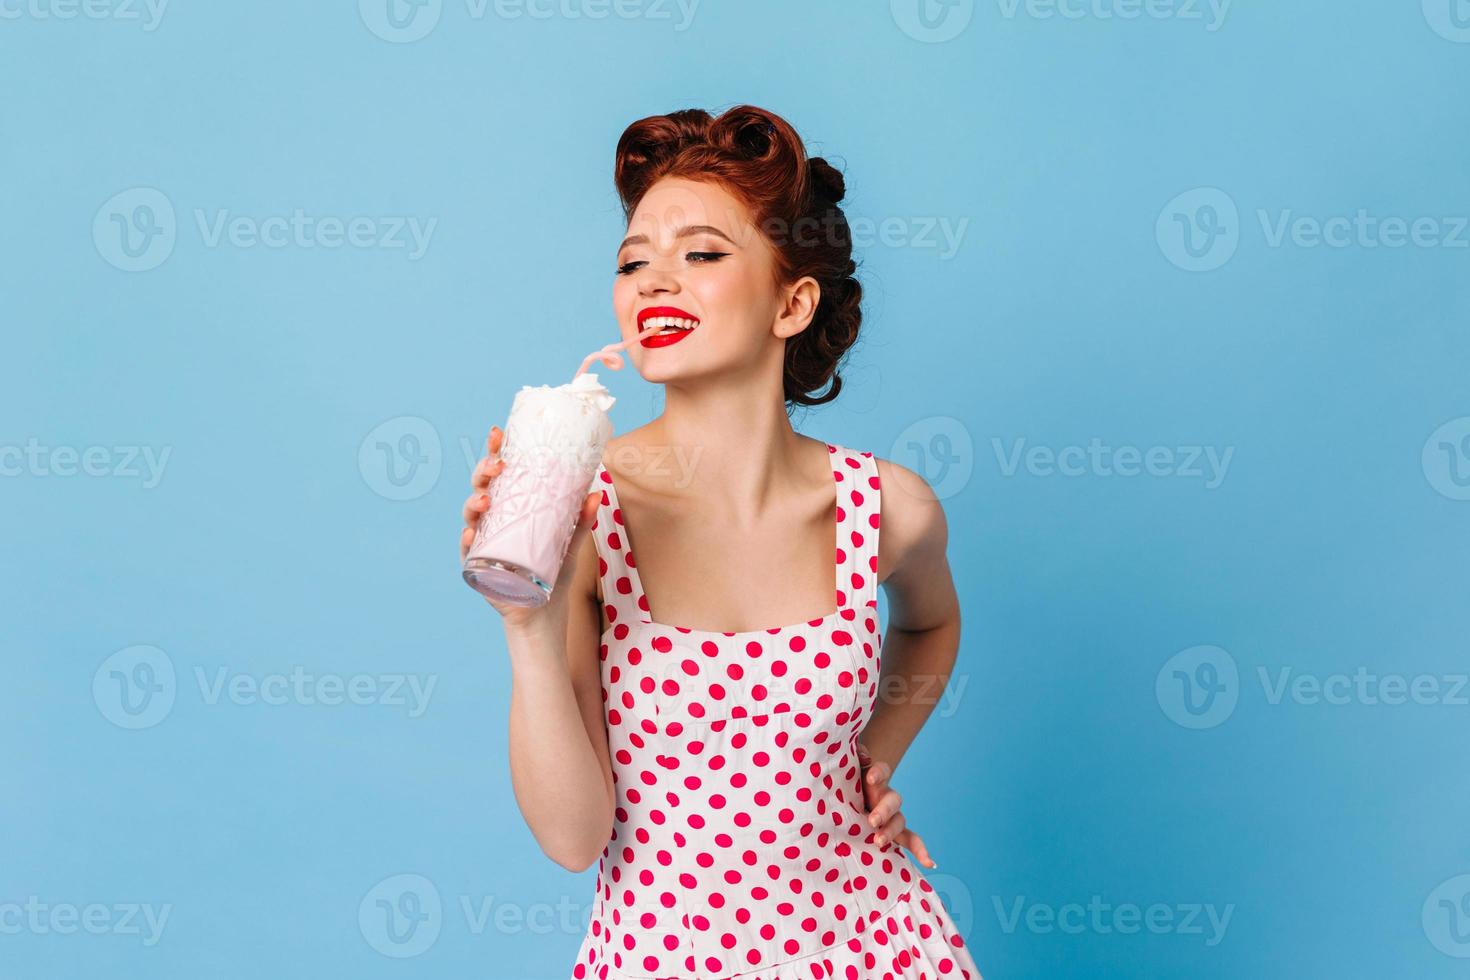 Inspired girl in polka-dot dress drinking milkshake. Laughing ginger female model holding beverage photo